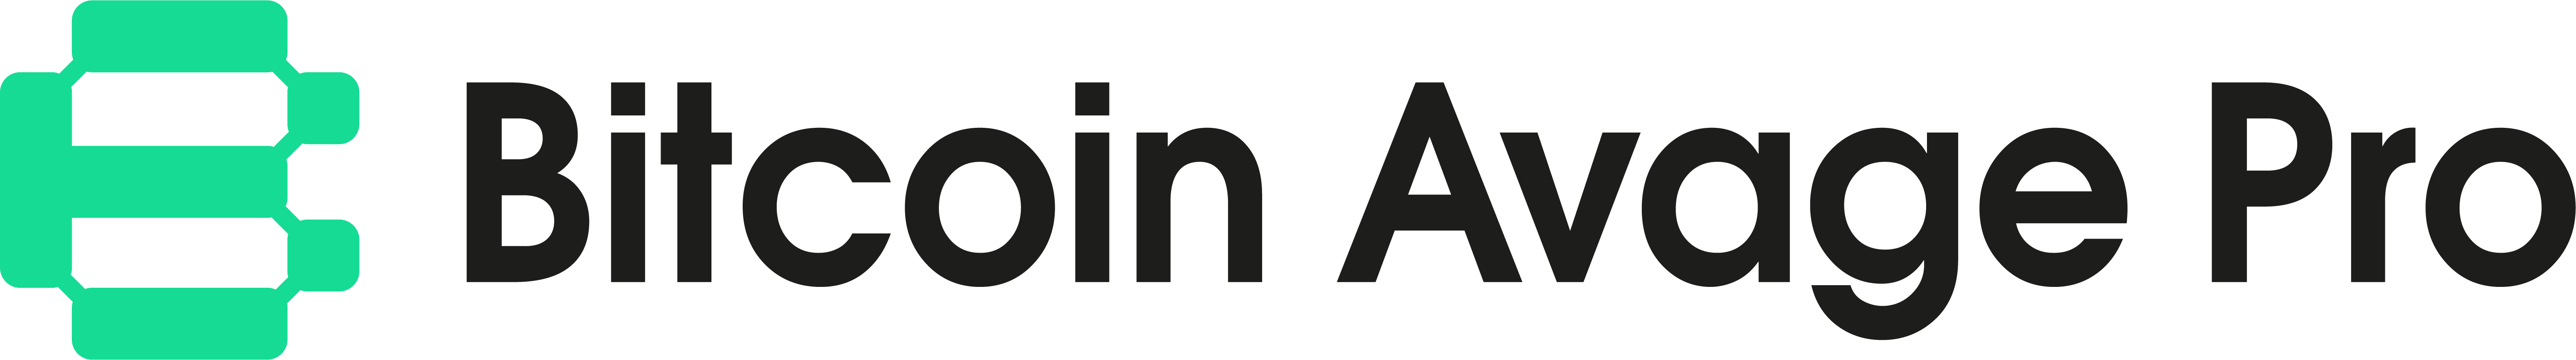 Bitcoin Avage Pro logotips